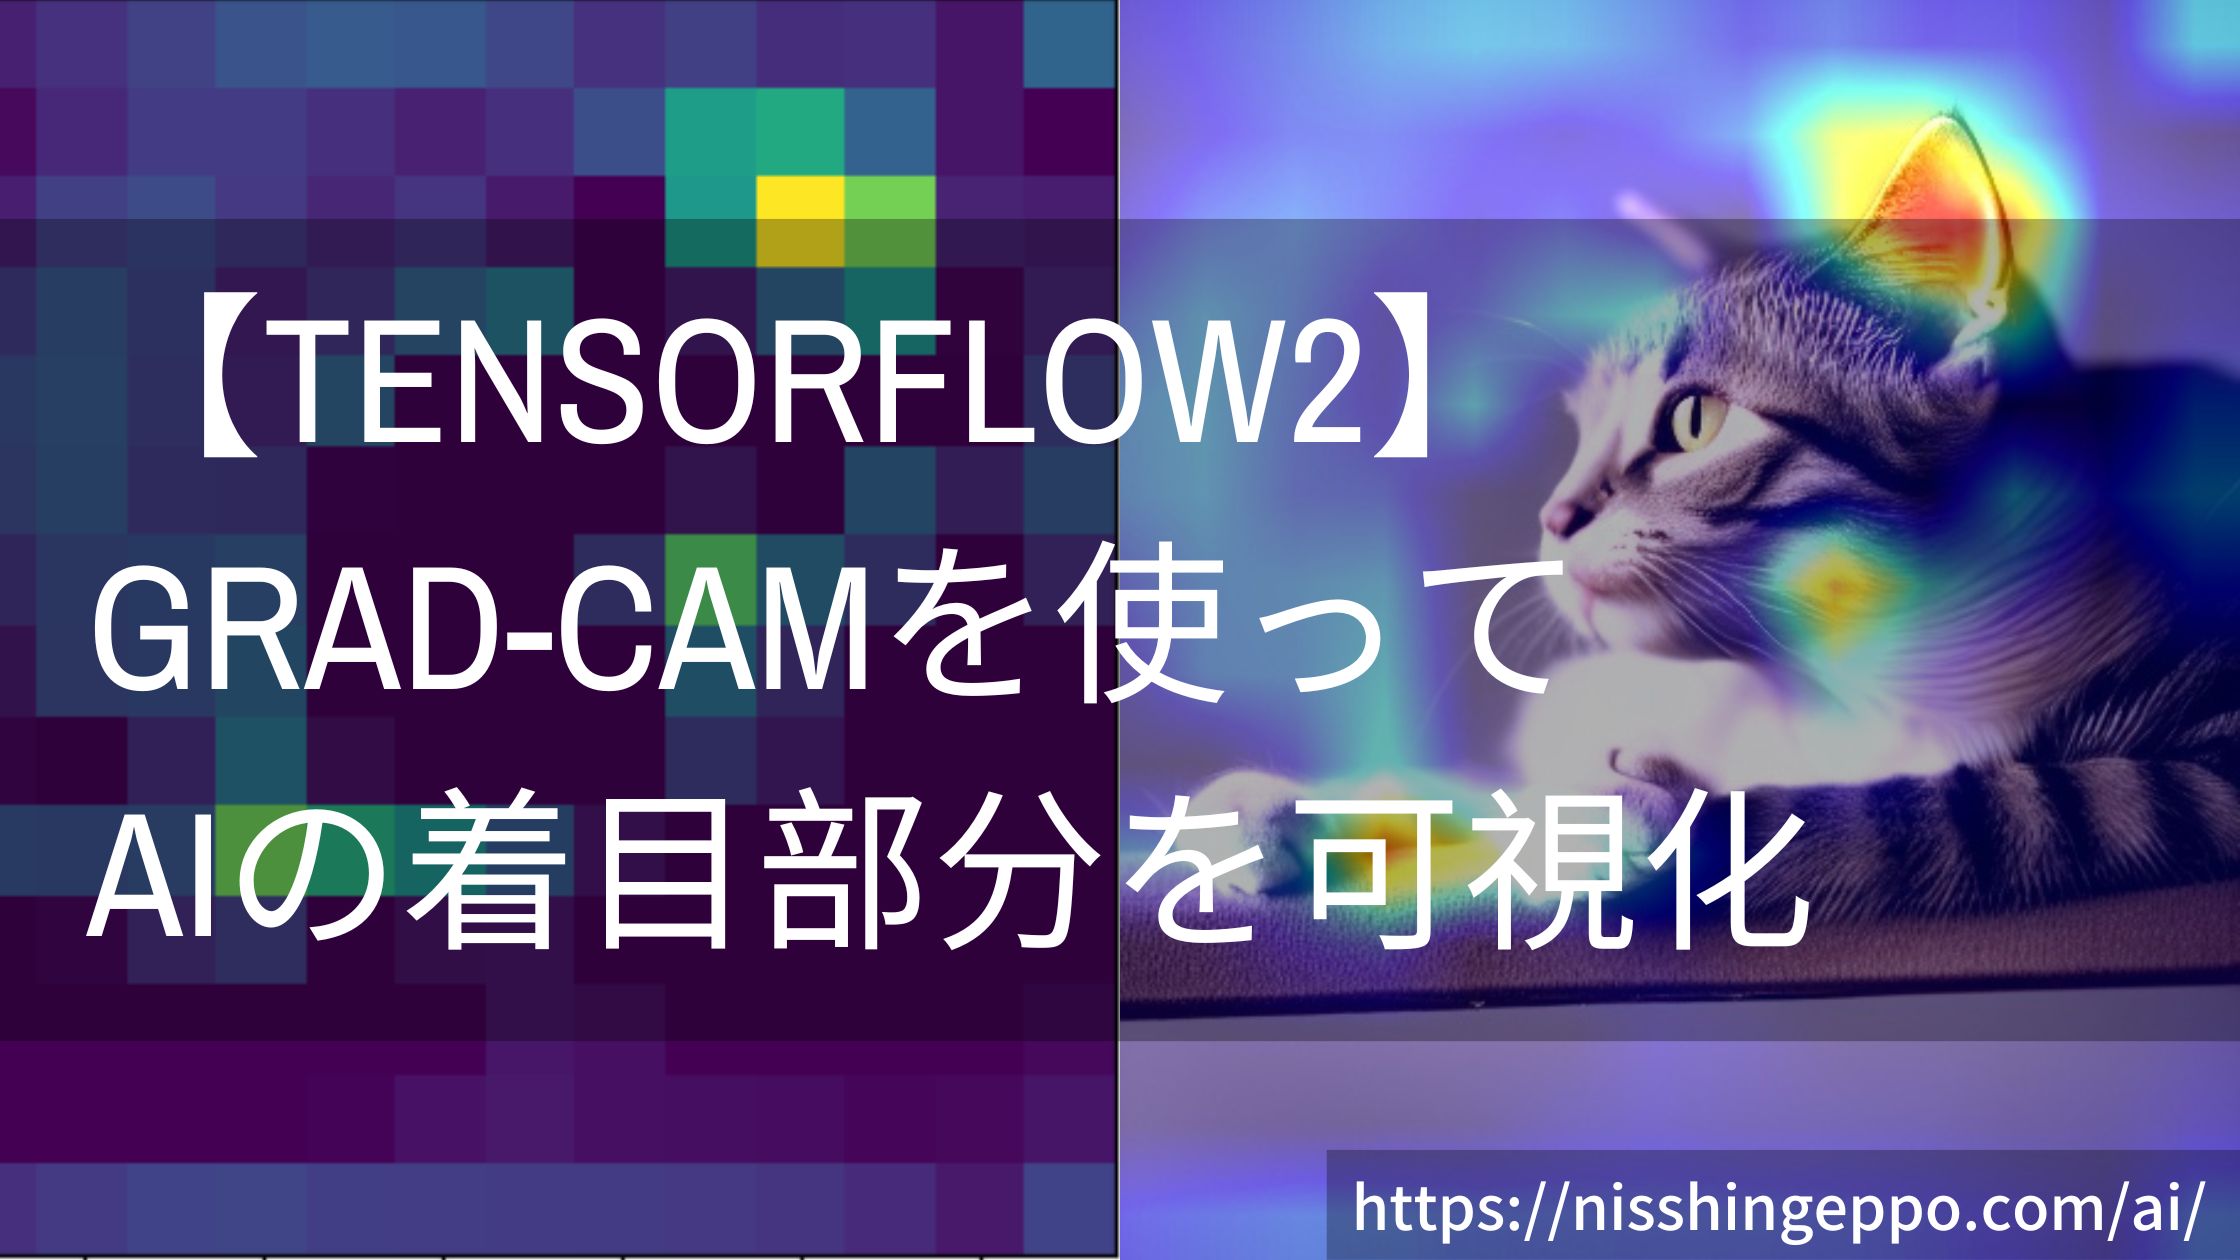 【TensorFlow2】Grad-CAMでAIが画像のどこに着目しているか可視化する